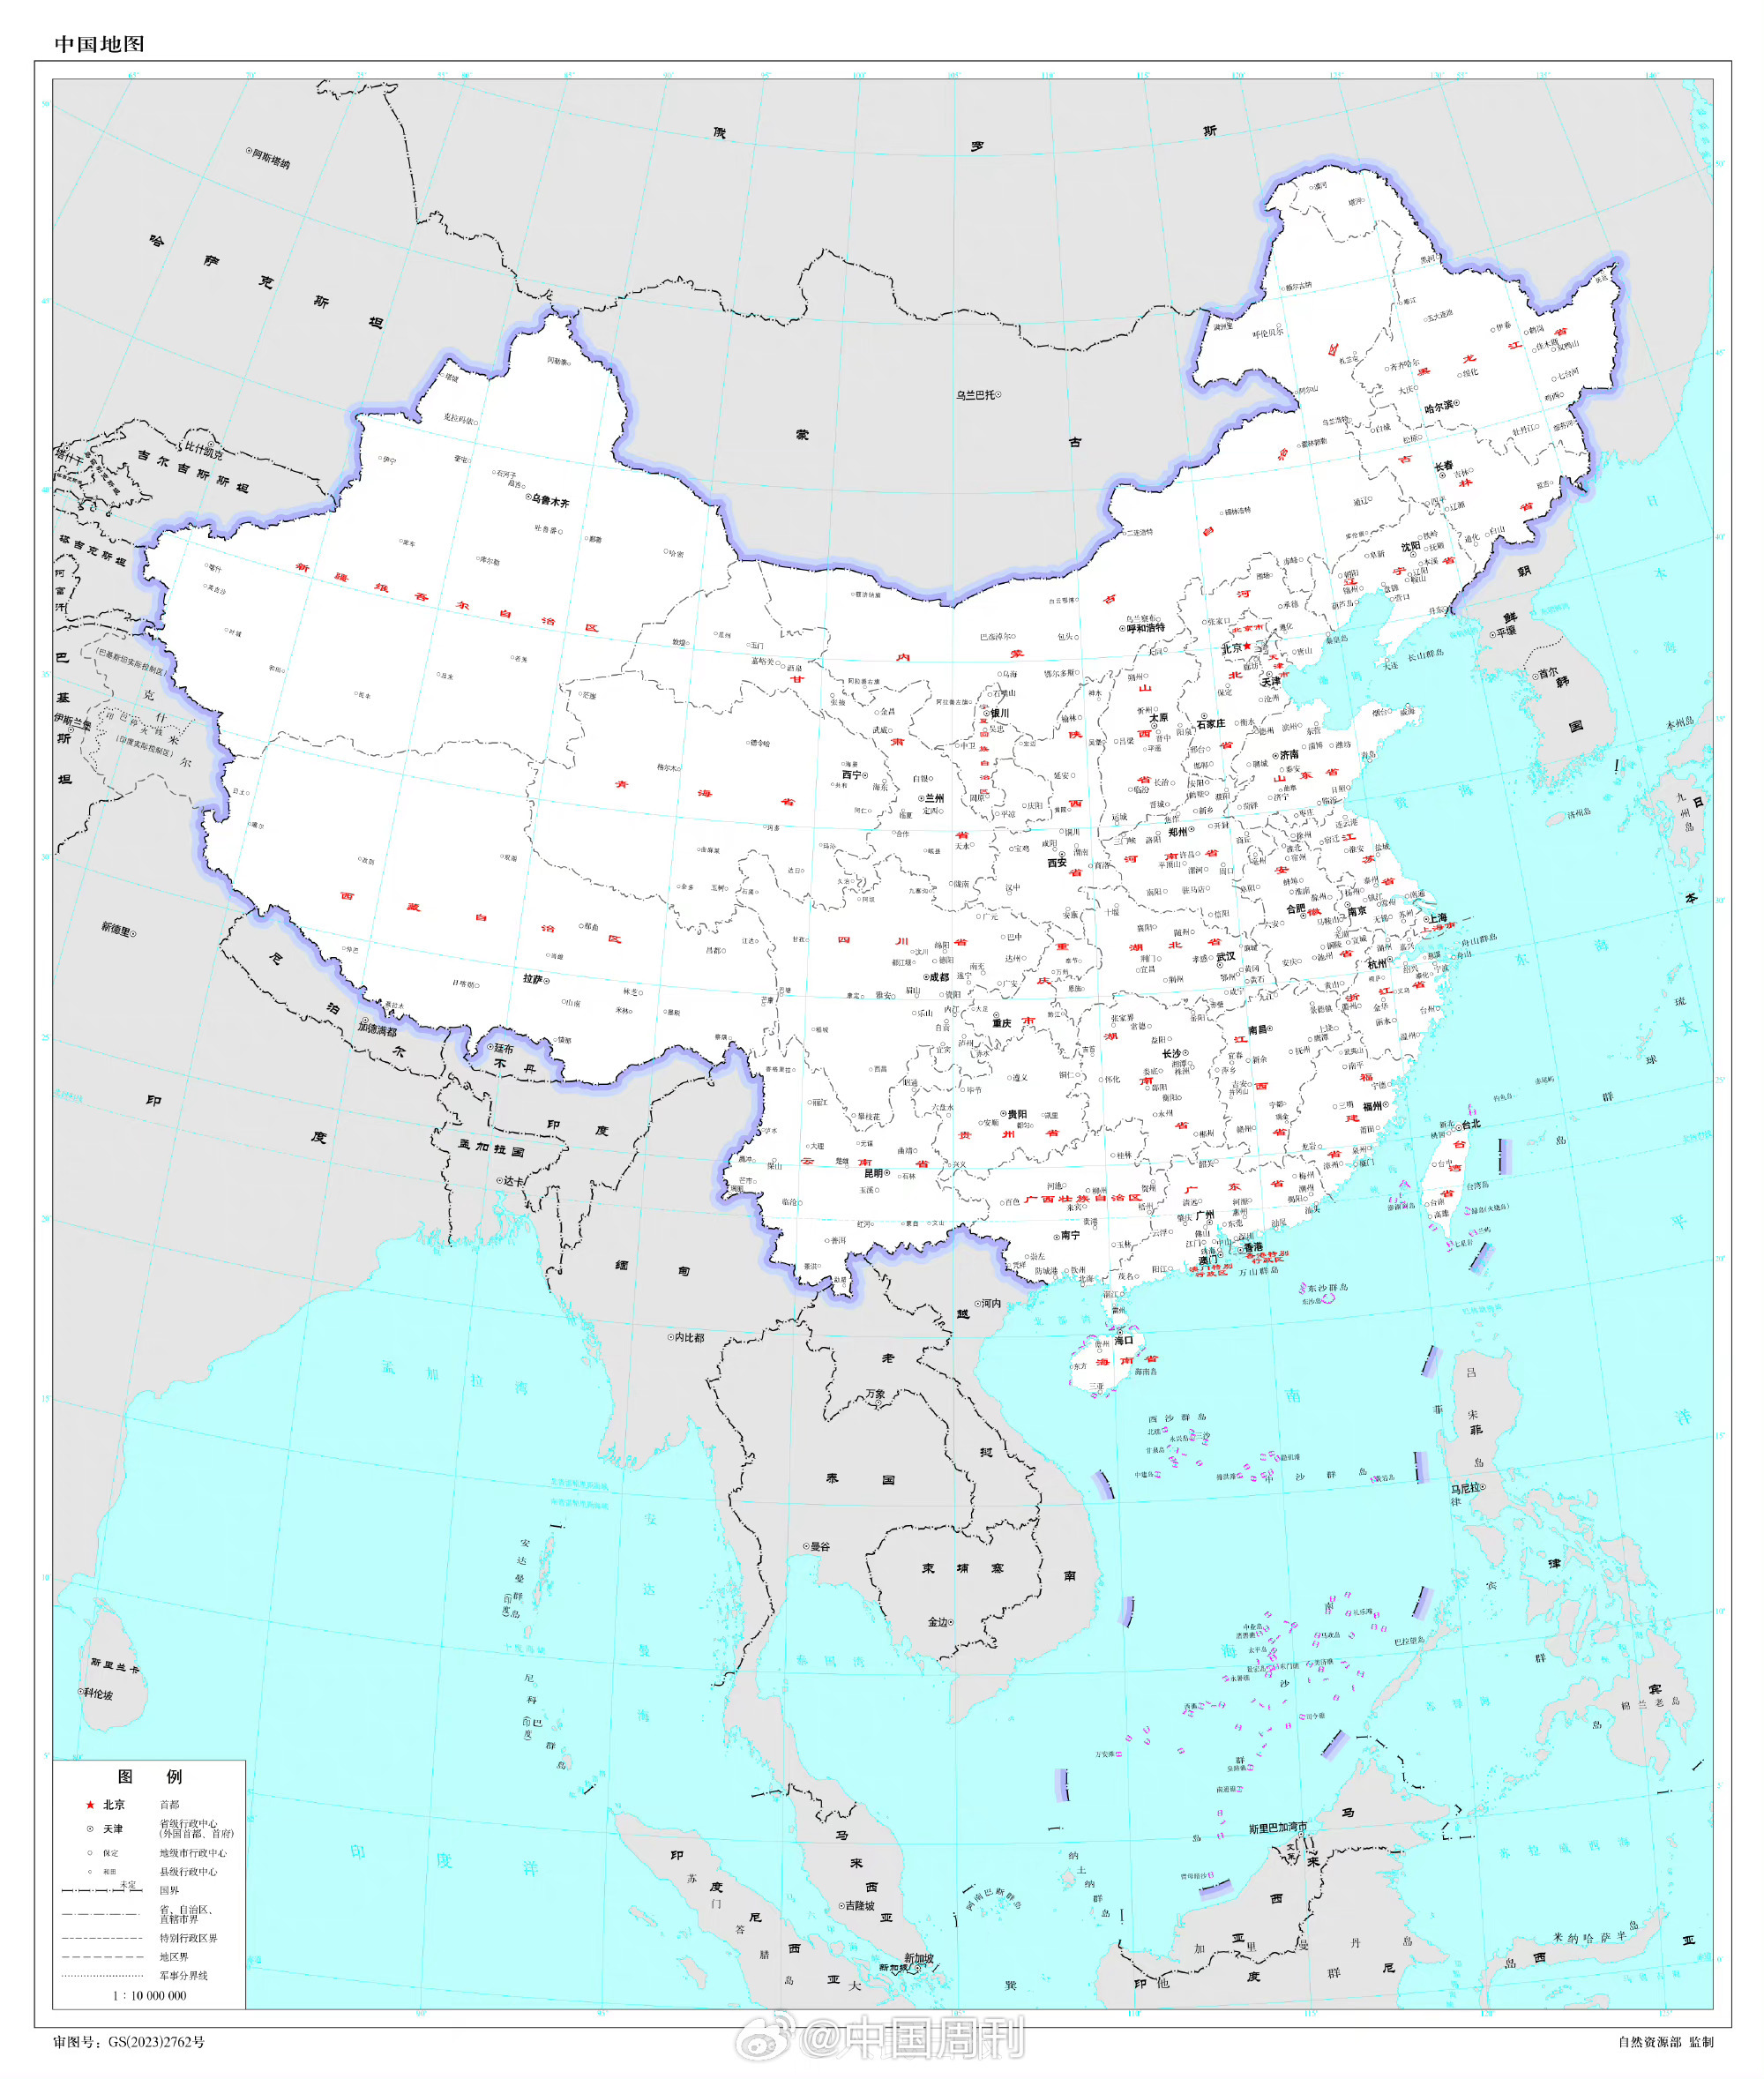 中文版世界地图 放大图片